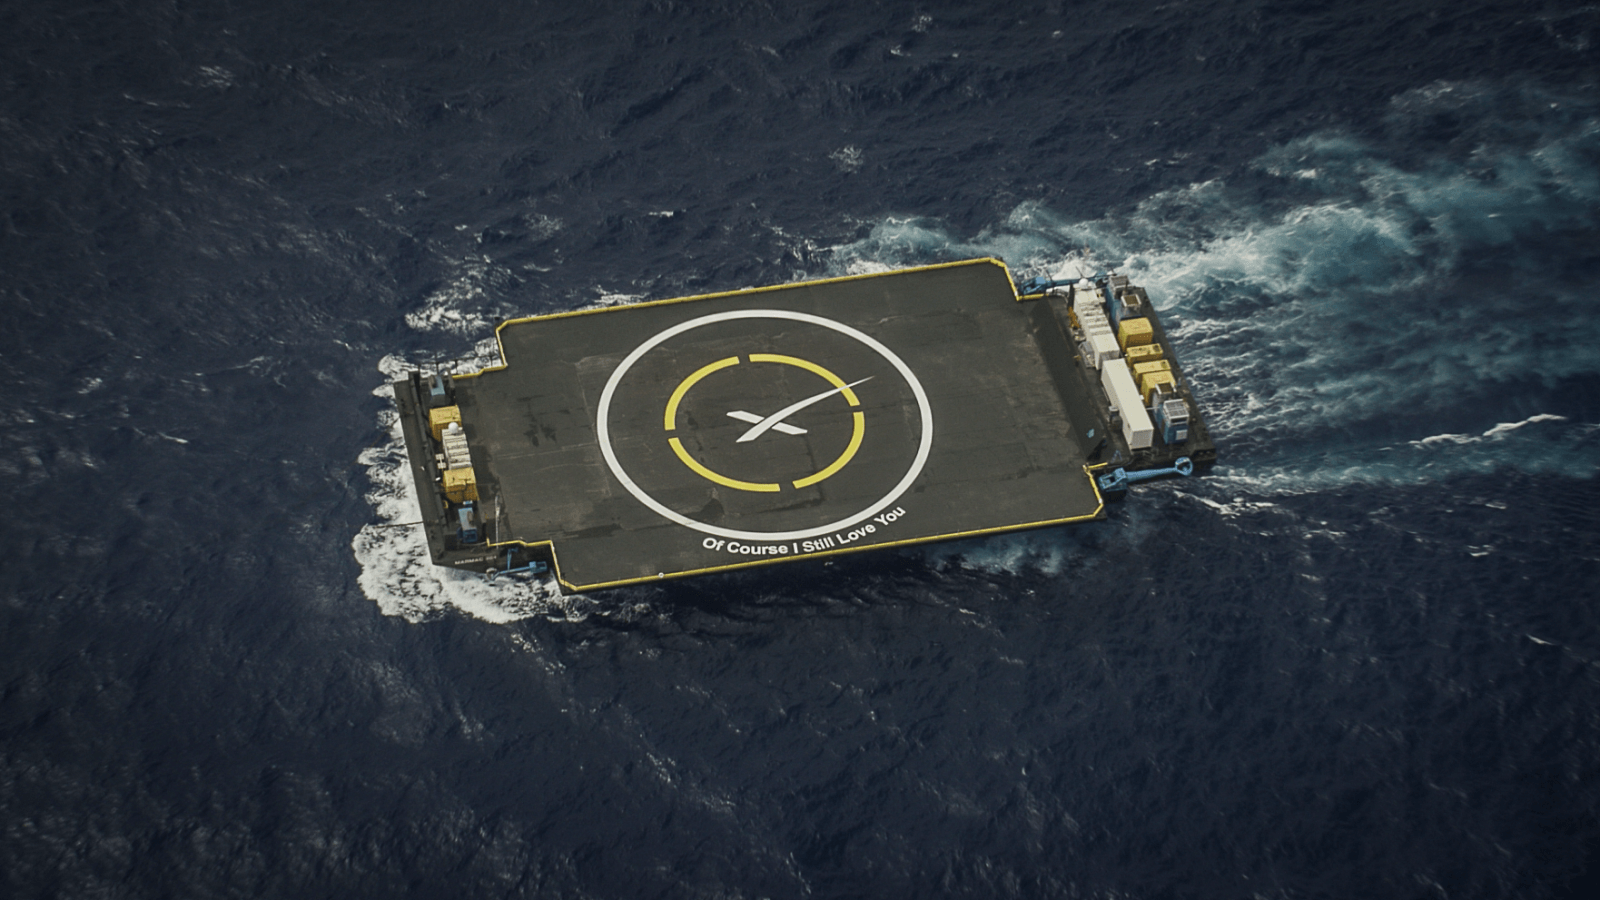 Why does SpaceX keep focusing on ocean landings?